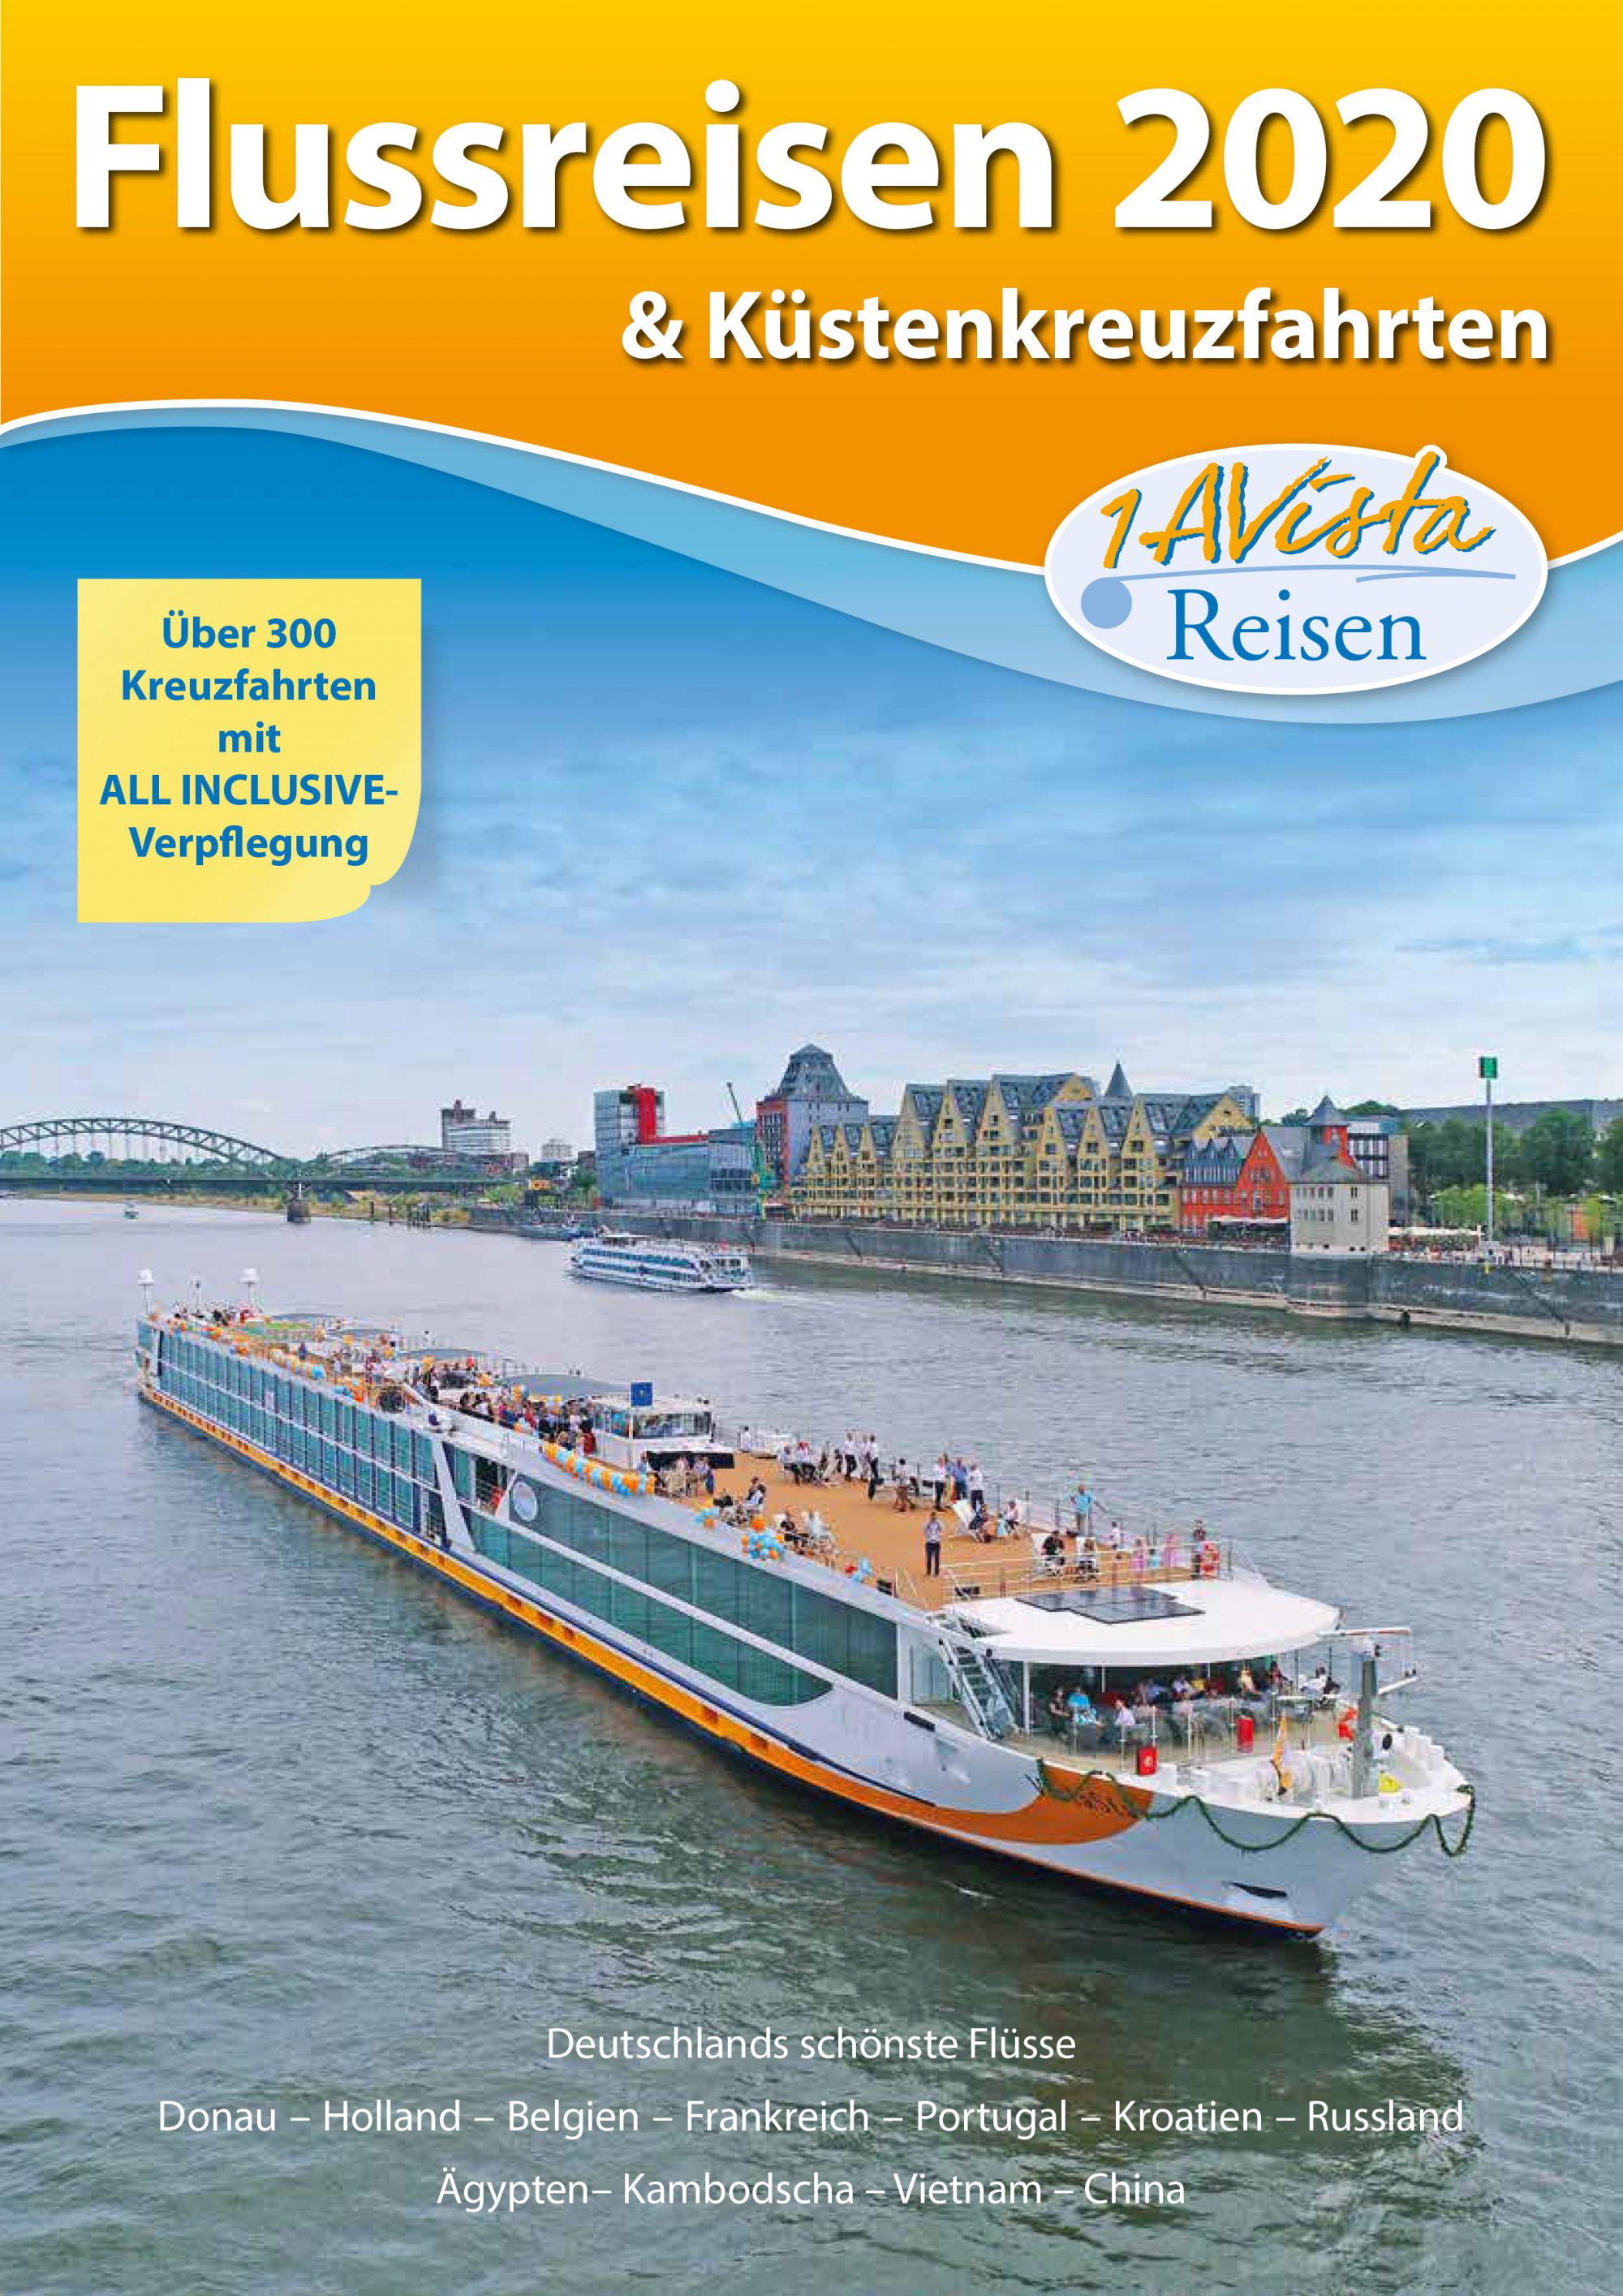 1AVista Reisen präsentiert im neuen Katalog „Flussreisen 2020 & Küstenkreuzfahrten“ neue Routen den Schiffsneubau VistaSky und Neuzugang MS VistaSerenity